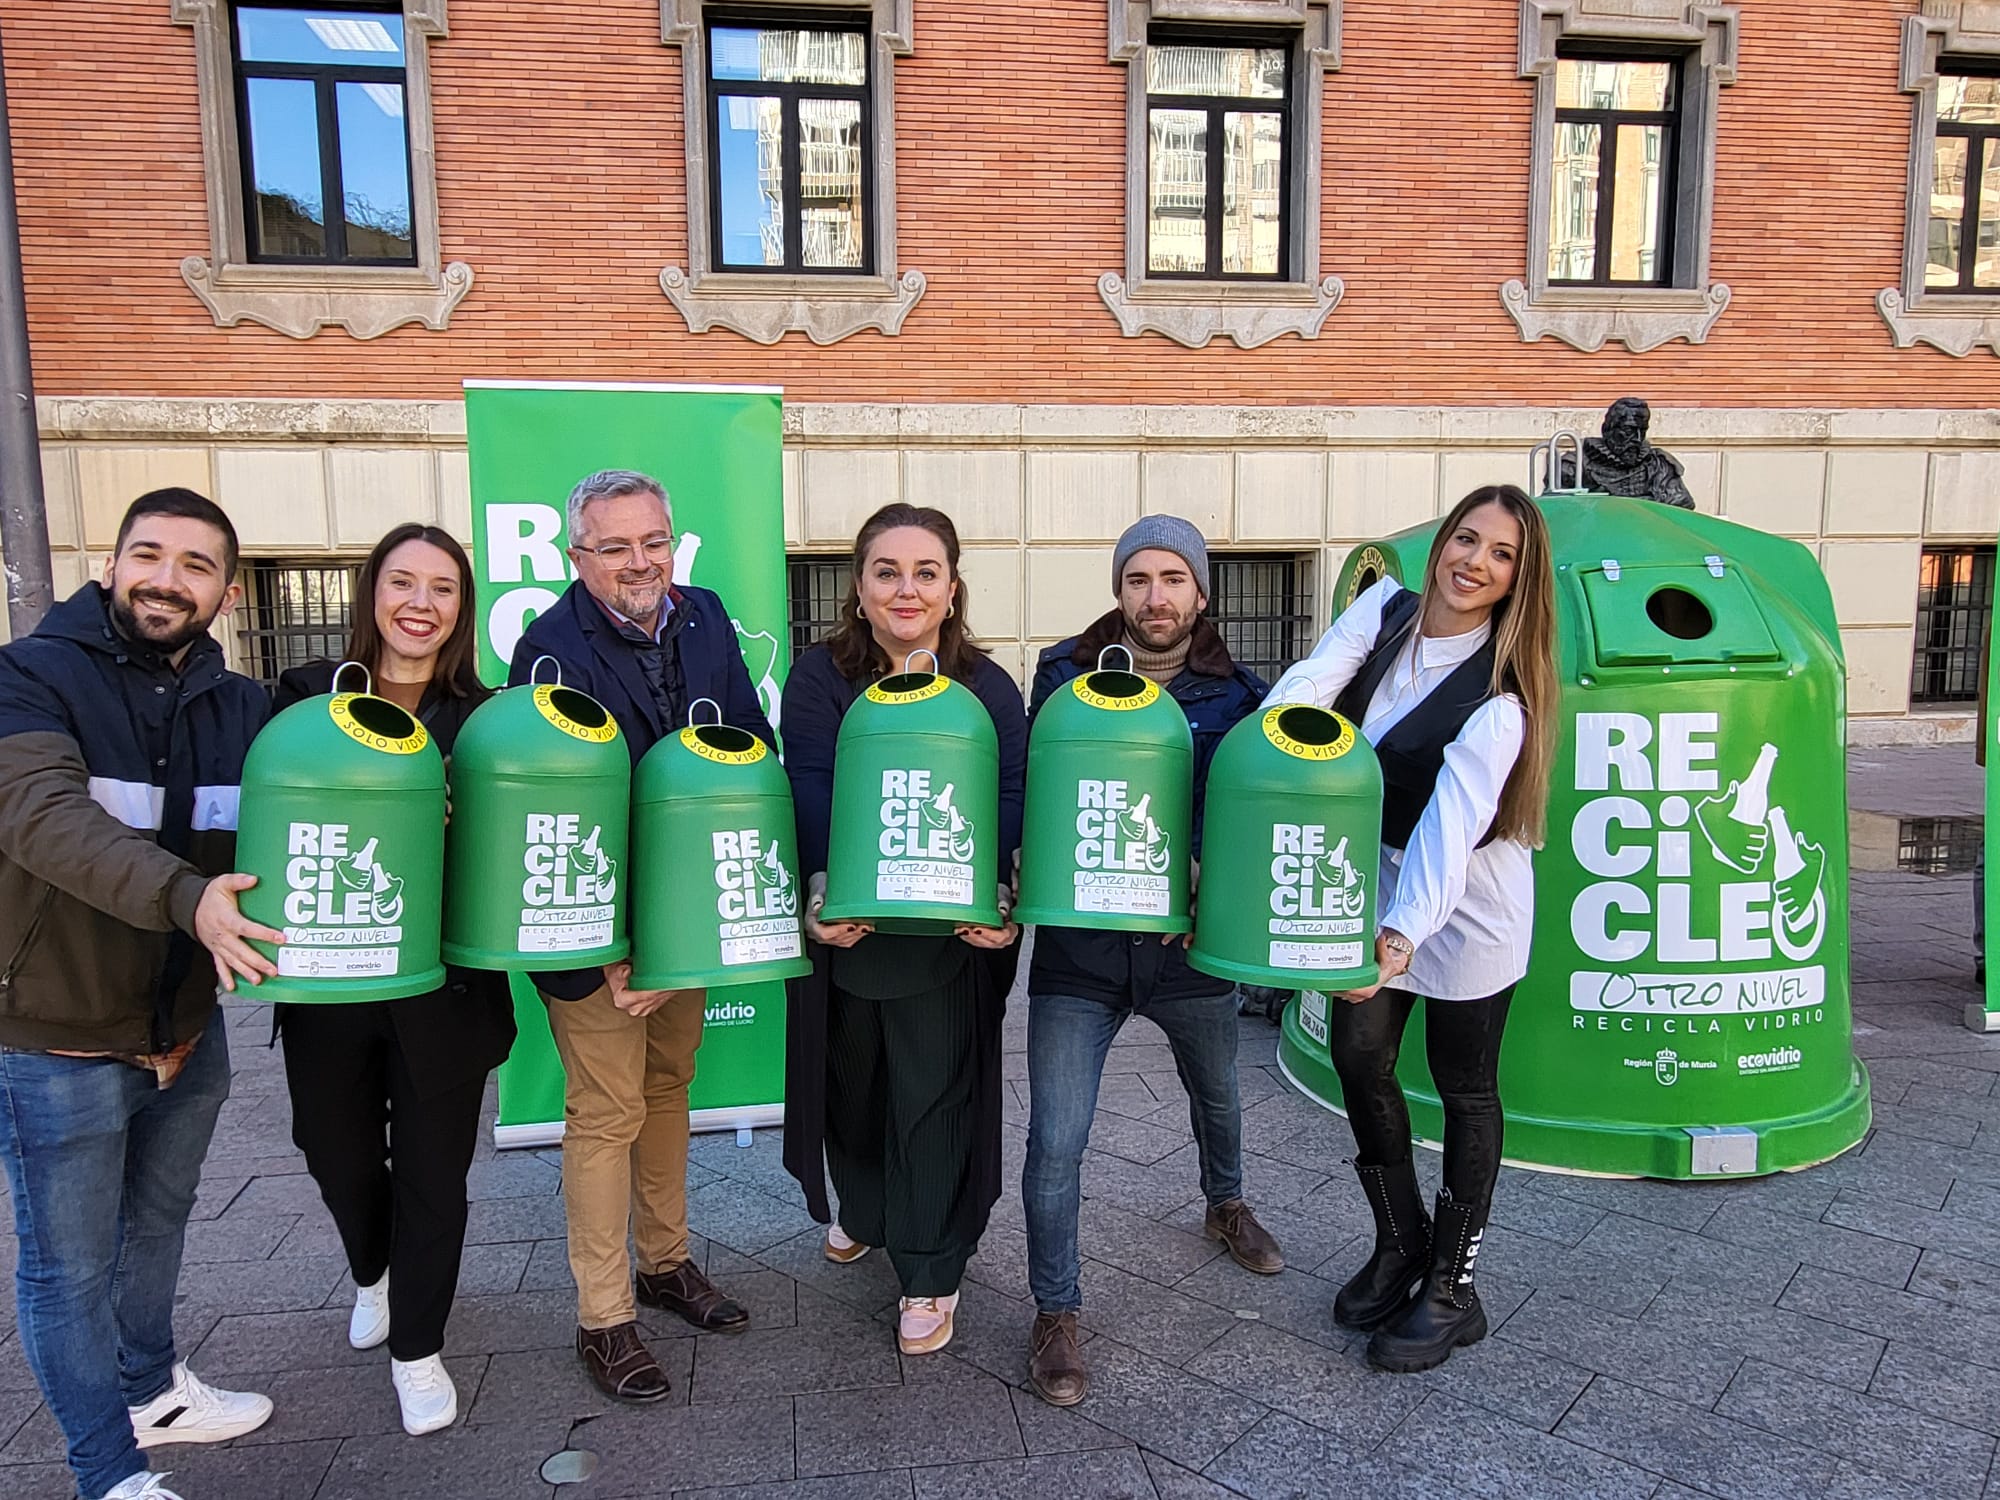 La secretaria autonómica de Energía, Sostenibilidad y Acción Climática, María Cruz Ferreira, presenta la campaña 'Recicleo, otro nivel', organizada junto a Ecovidrio, junto a los 4 influencers que participan